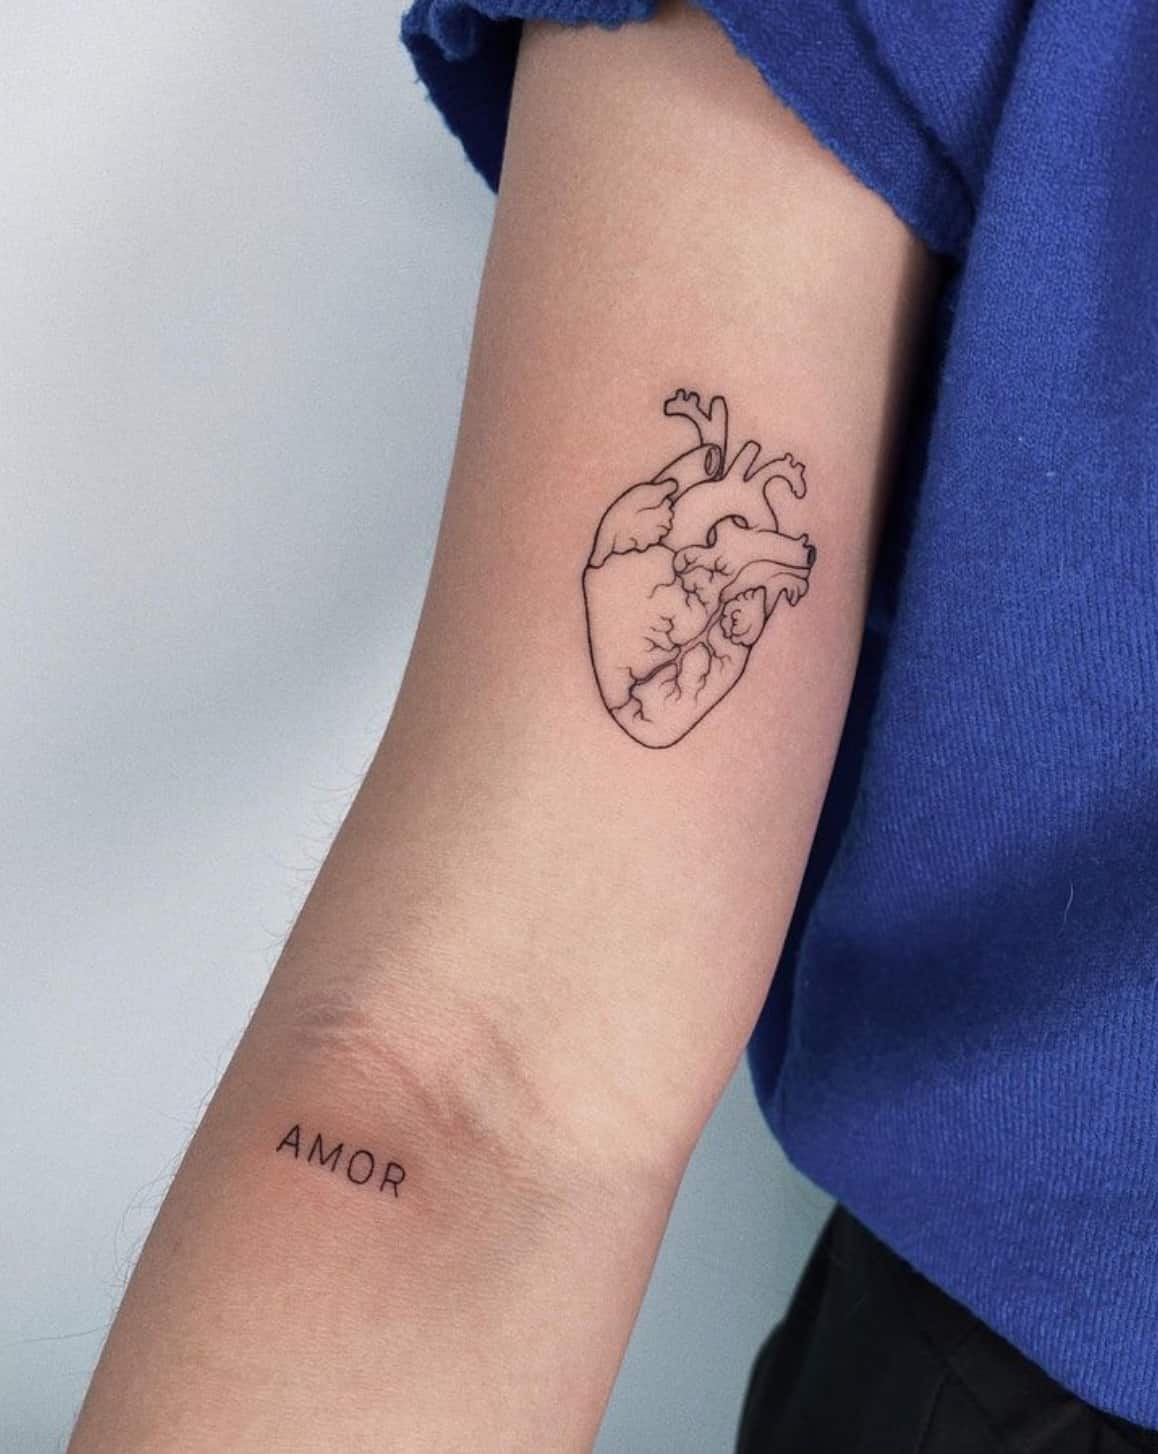 Broken Heart Tattoo by tattoosbydanh on DeviantArt